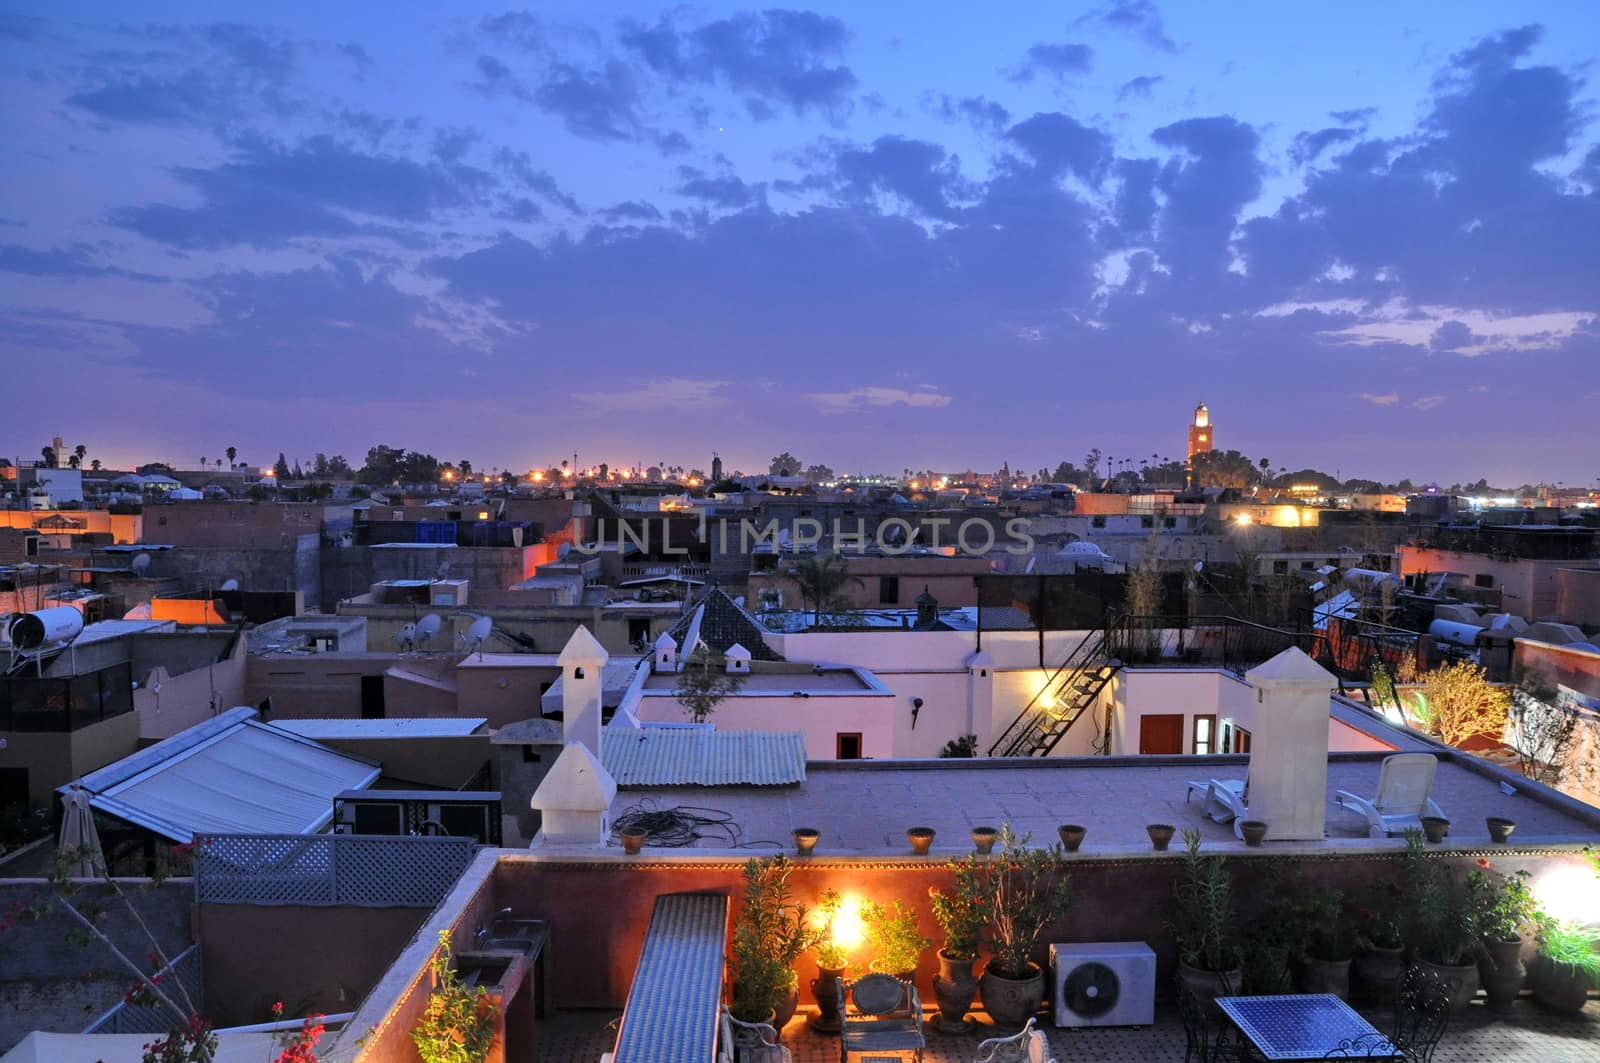 Marrakech rooftops at dusk